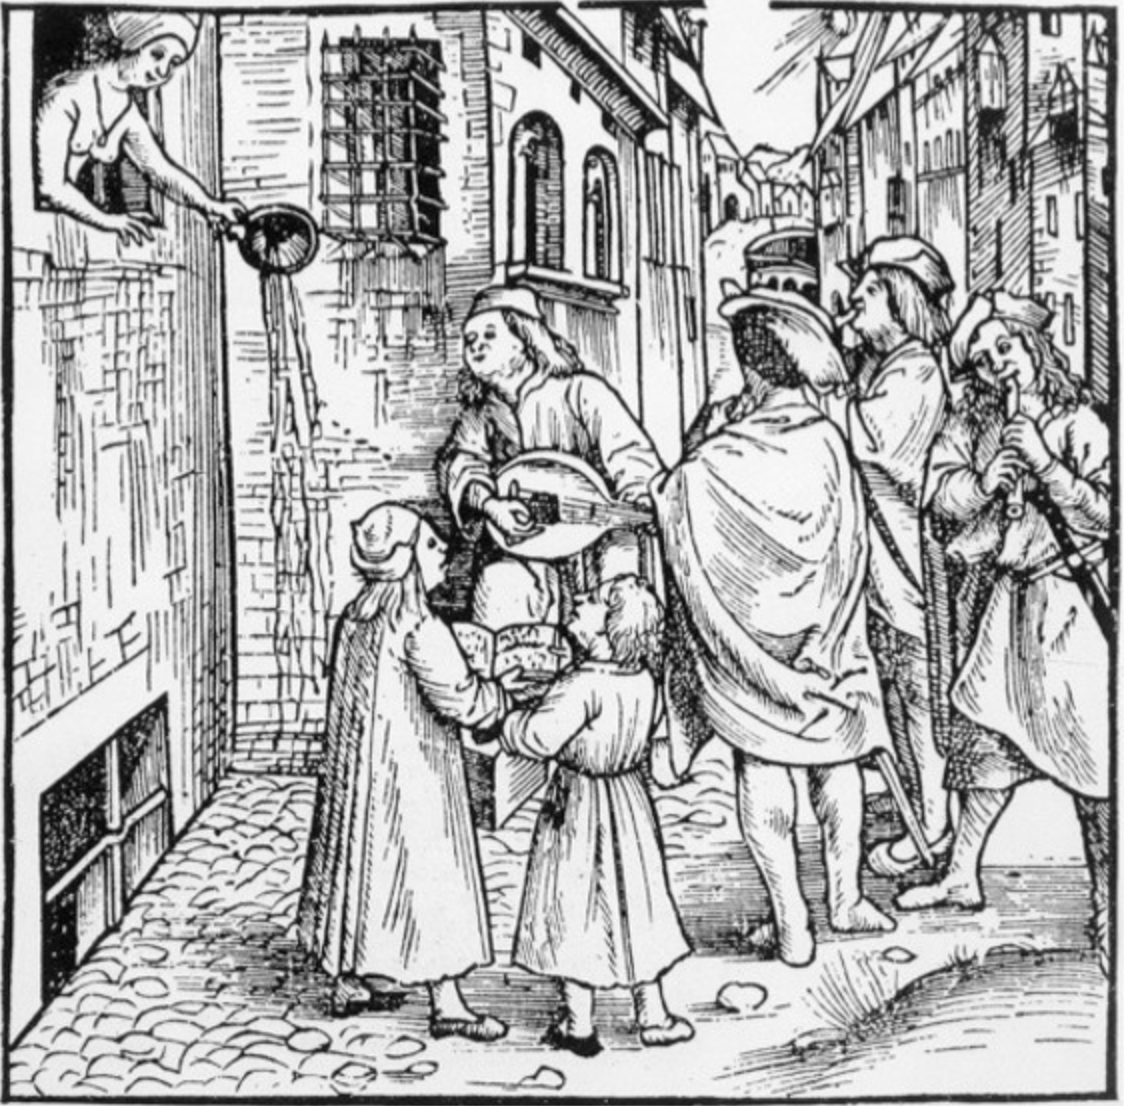 Брудні середньовічні вулиці були справжнім розсадником інфекцій: на них викидали всі органічні відходи, а мешканці спустошували нічні горщики прямо з вікон будинків. Archiv Gerstenberg / BBC History